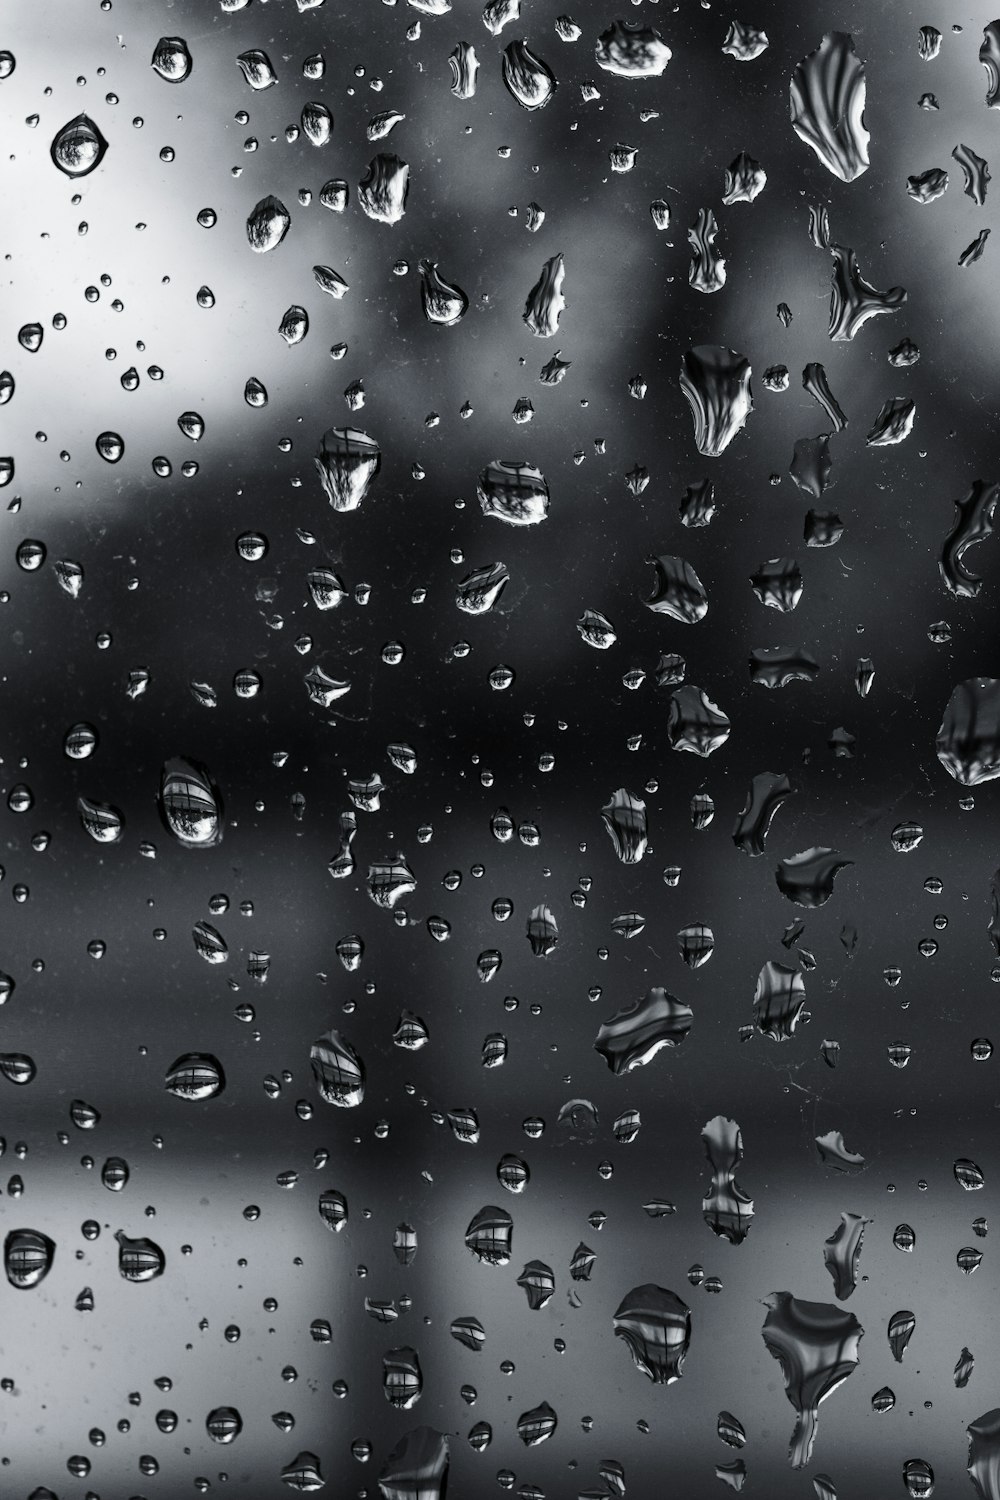 窓の上の雨滴の白黒写真